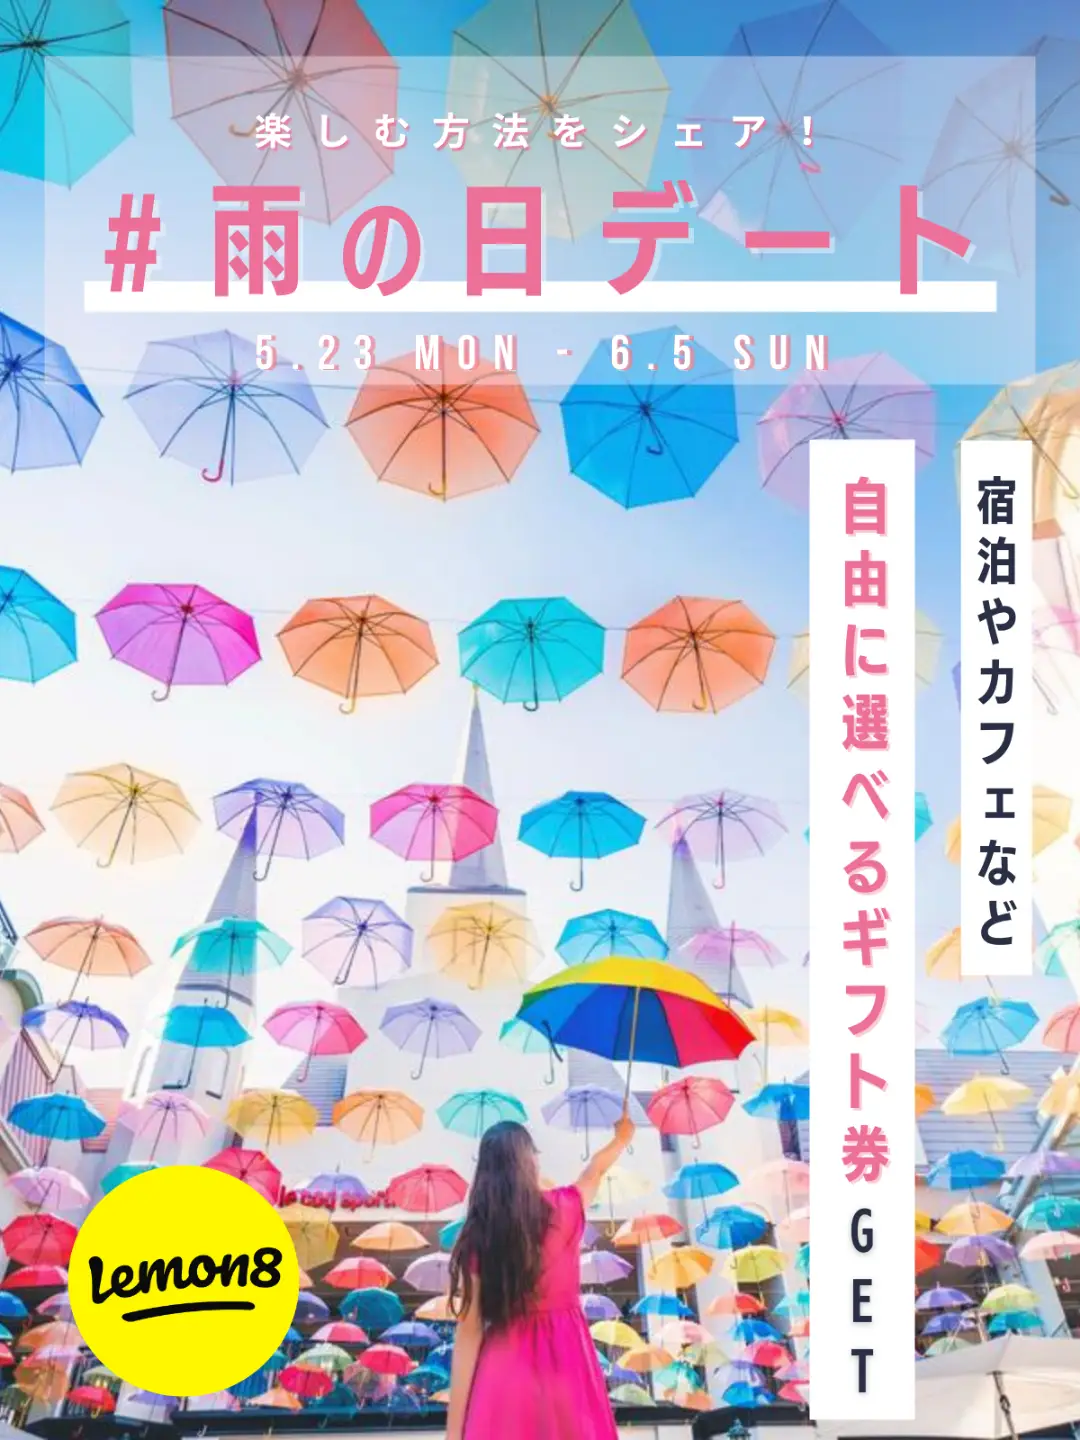 【選べるギフト券当たる】雨☔でも楽しい😊「#雨の日デート」投稿キャンペーンの画像 (1枚目)